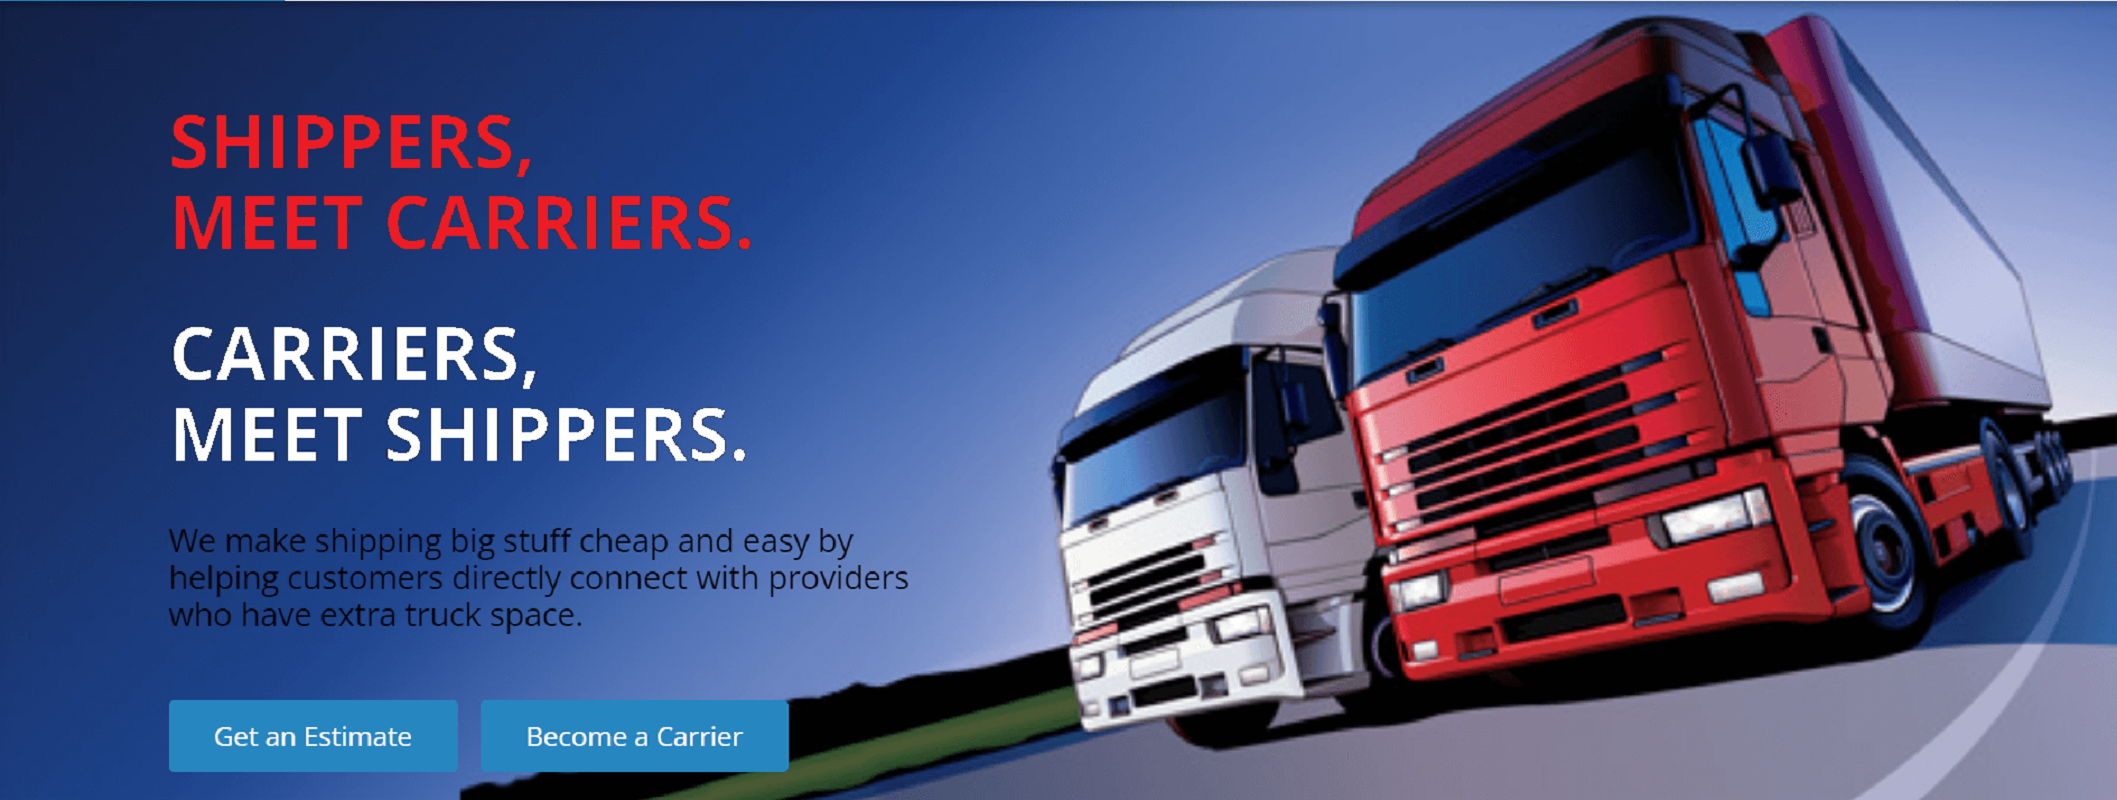 Freight logistics management software